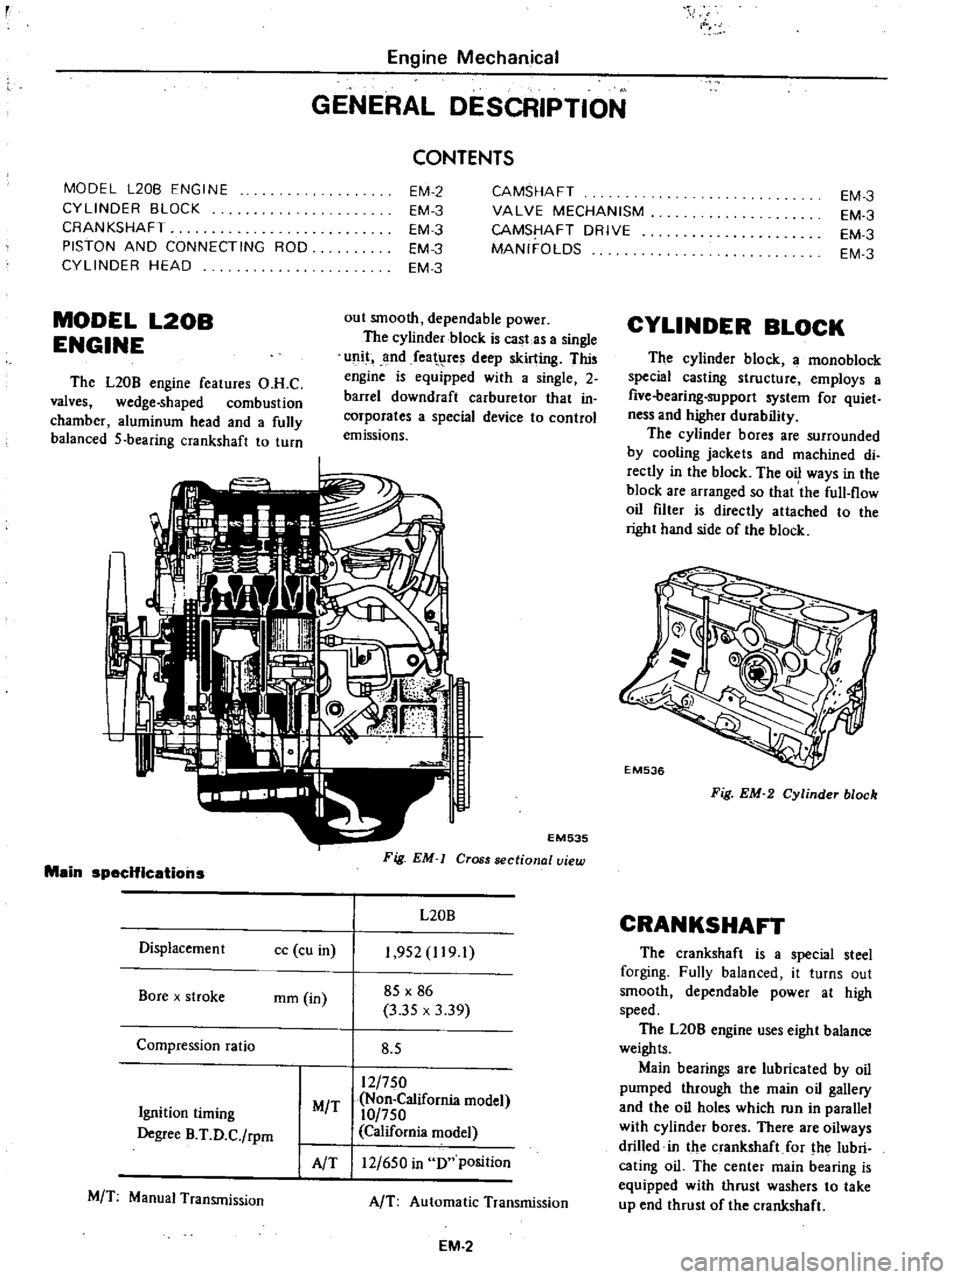 DATSUN PICK-UP 1977  Service Manual 
Engine 
Mechanical

GENERAL 
DESCRIPTION

MODEL

L20B 
ENGINE

CYLINDER 
BLOCK

CRANKSHAFT

PISTON 
AND 
CONNECTING 
ROD

CYLINDER 
HEAD 
CONTENTS

EM 
2

EM 
3

EM 
3

EM 
3

EM 
3 
CAMSHAFT

VALVE 